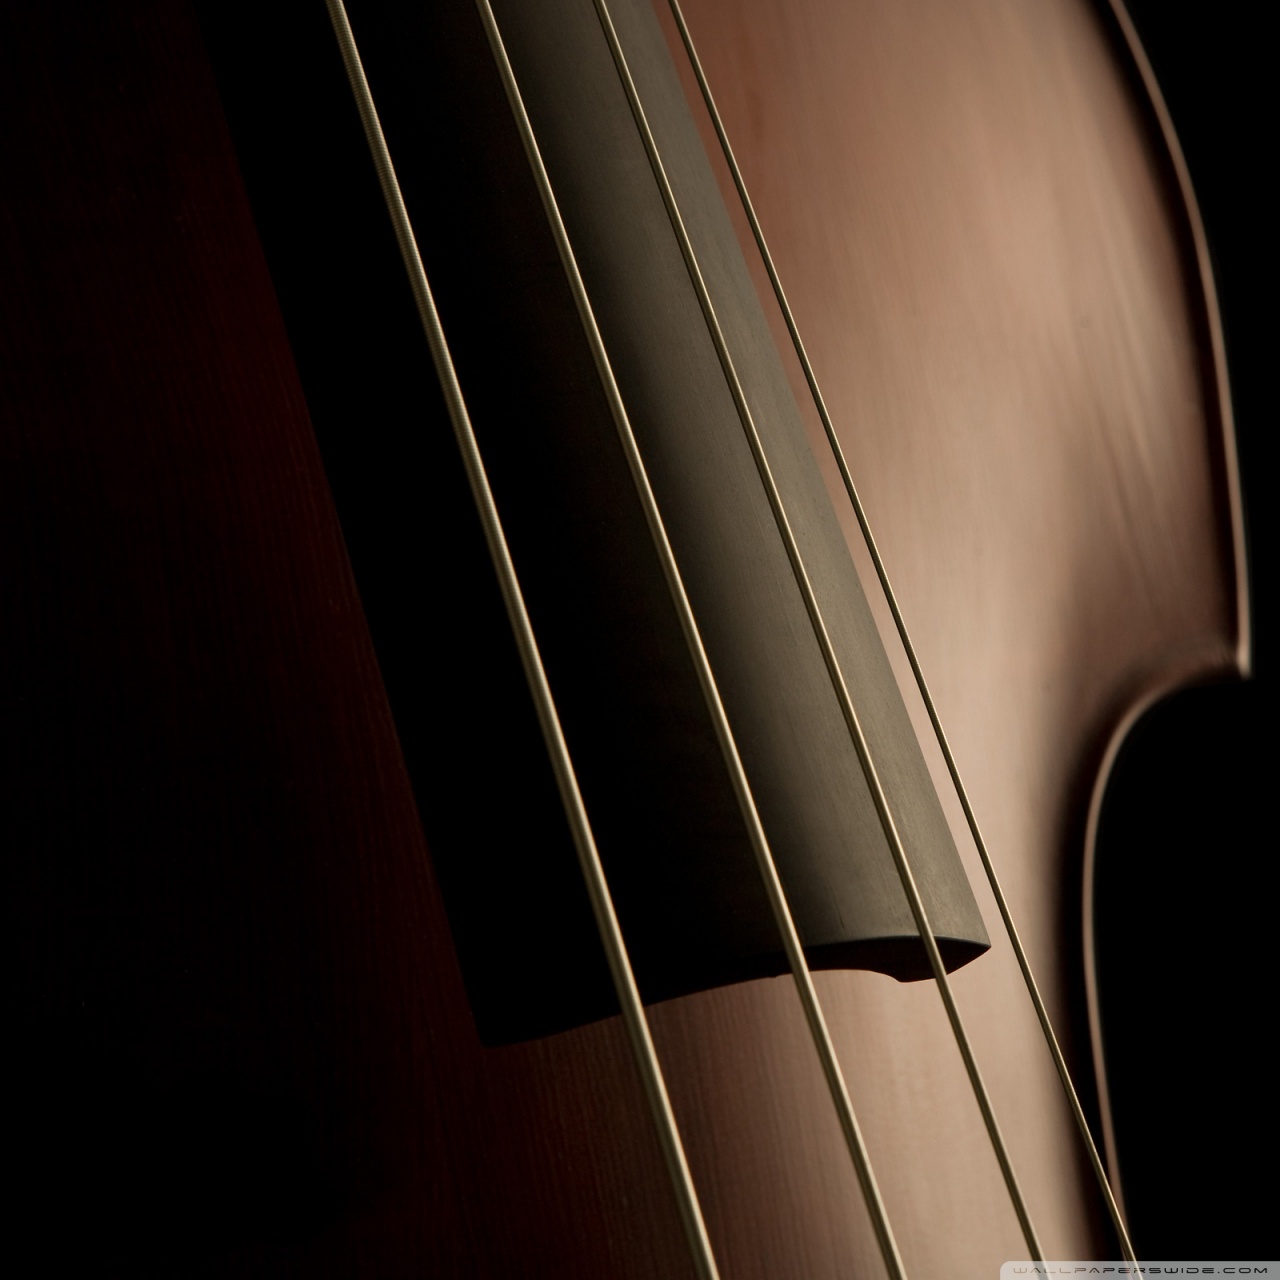 Double Bass Strings 4k HD Desktop Wallpaper For Ultra